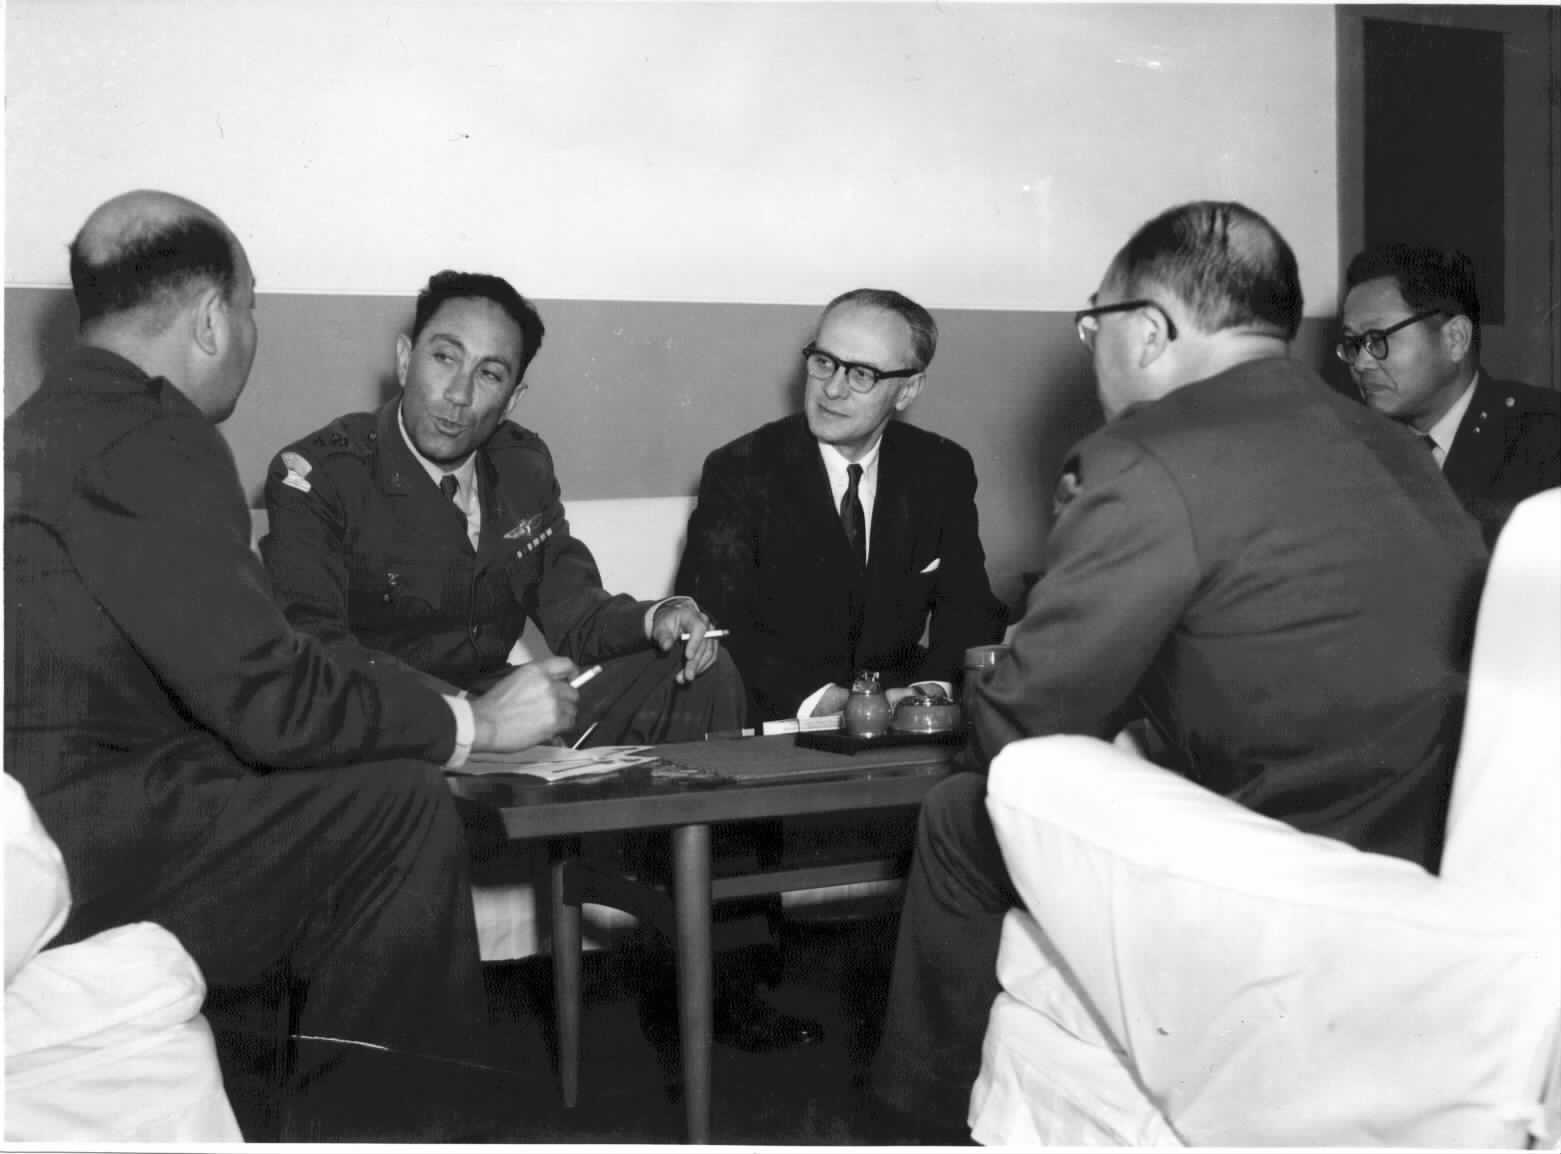 1962: ביקור קצינים יפנים באמ"ן. המארח ראש אמ"ן האלוף מאיר עמית.